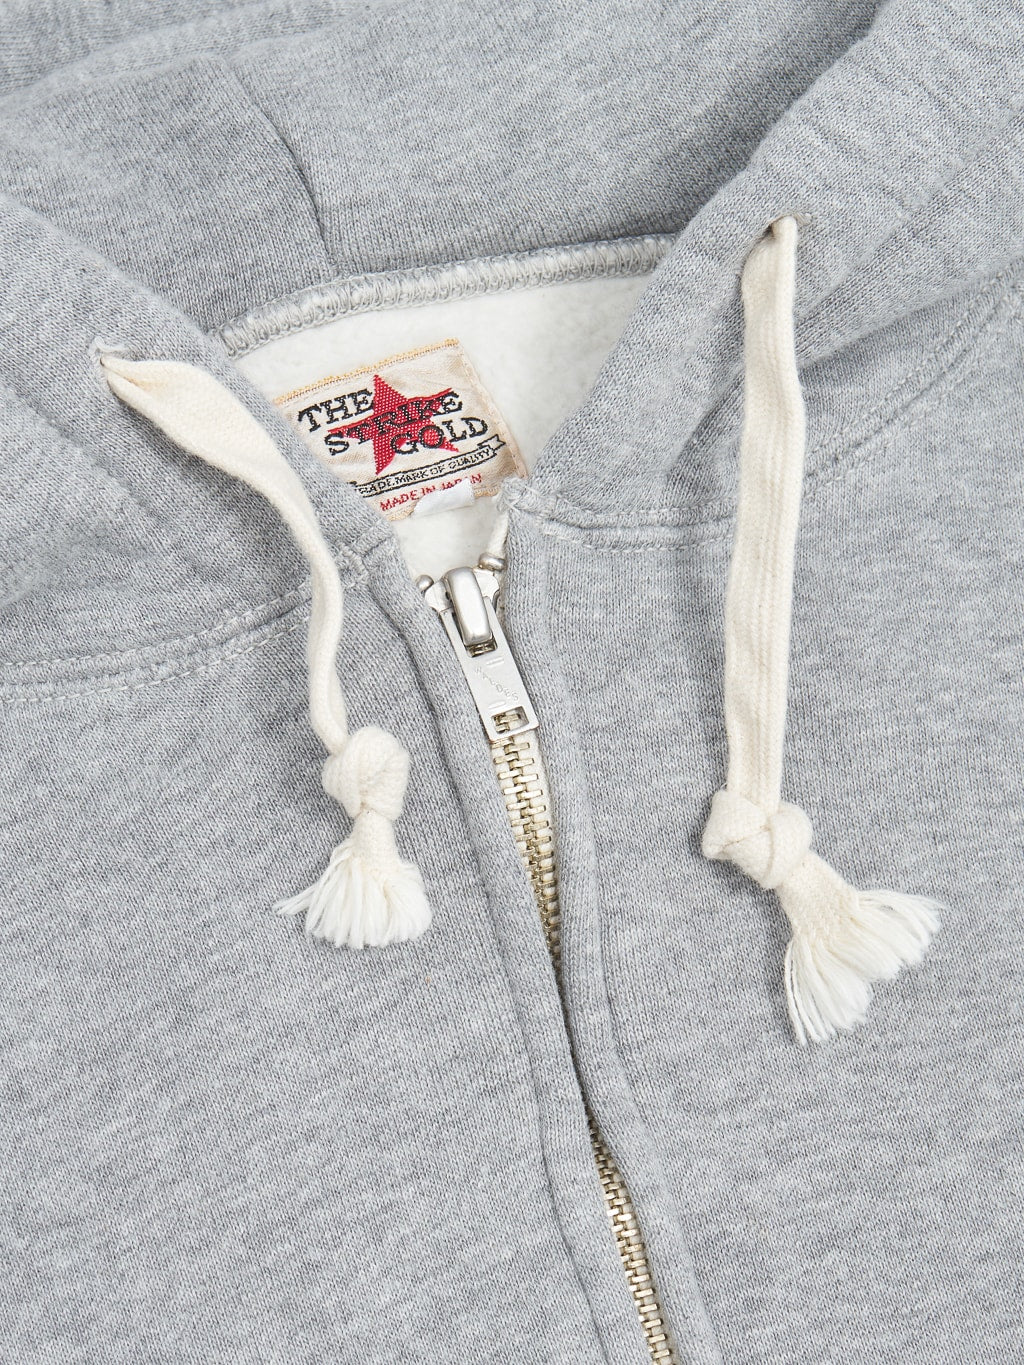 the strike gold zip hoodie grey metal zipper